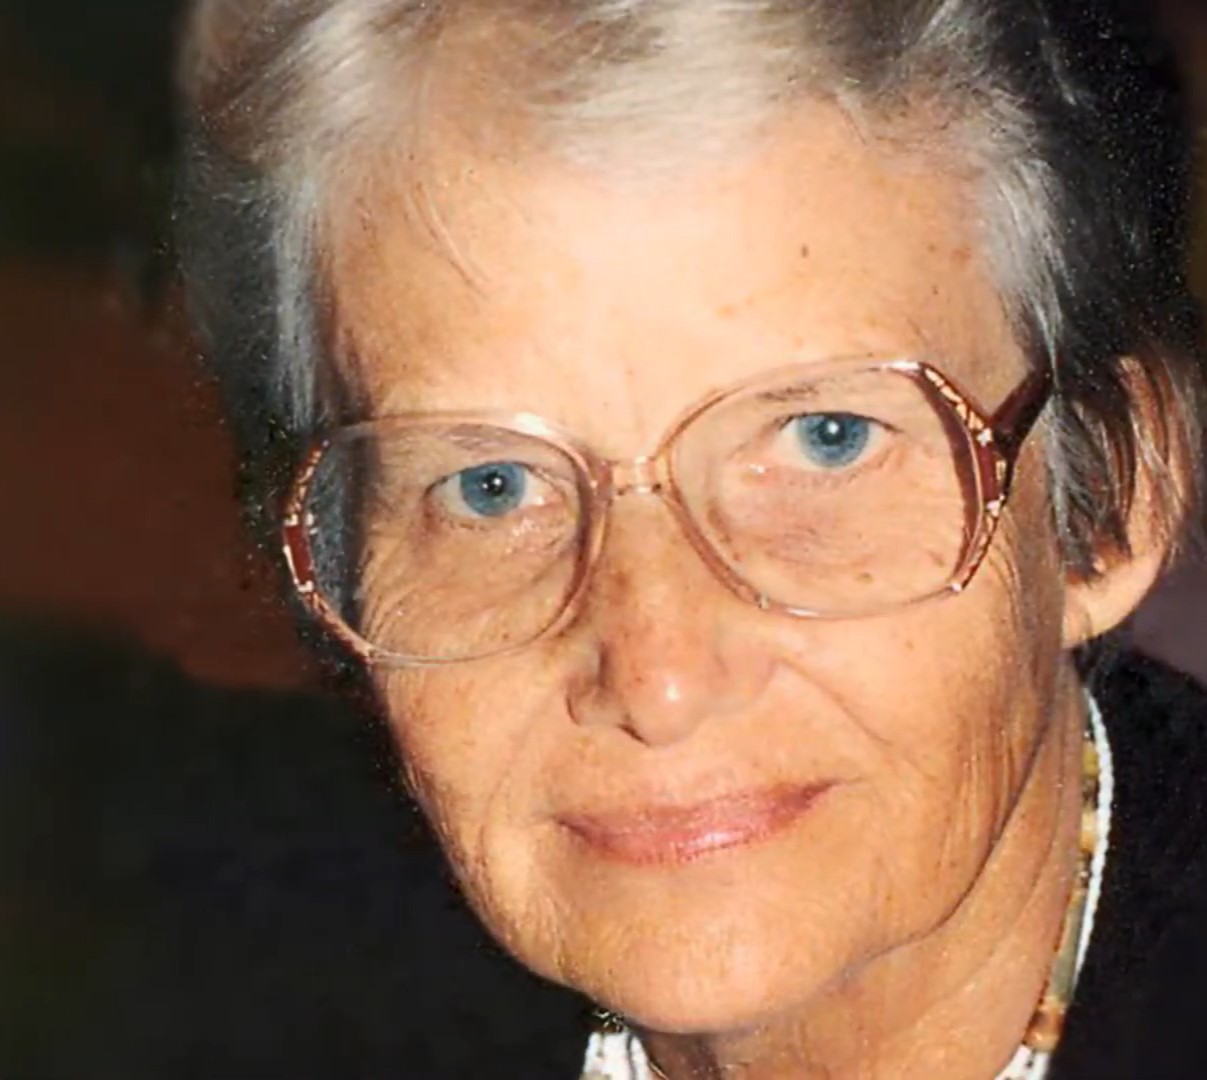 Na foto, Johanna Döbereiner, mulher branca, de mais de 70 anos de idade, com cabelos grisalhos e óculos, sorri levemente.